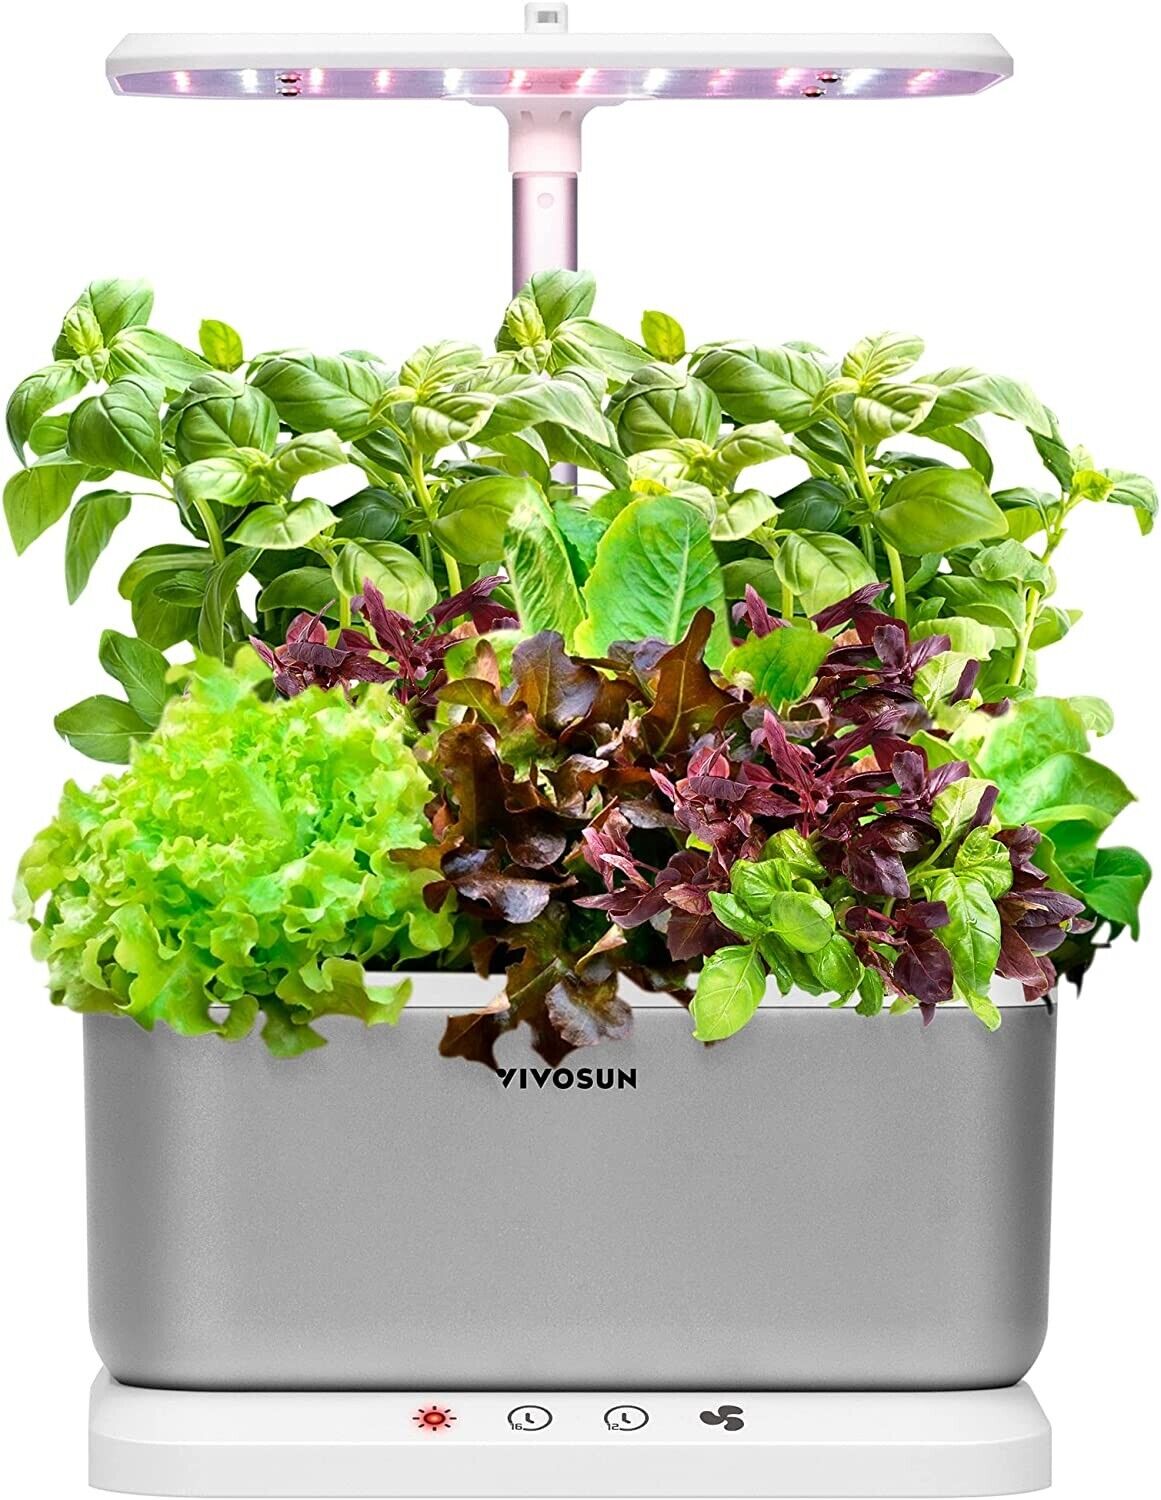 Vivosun Home Garden System 6 Pod Full-Spectrum LED Grow Light